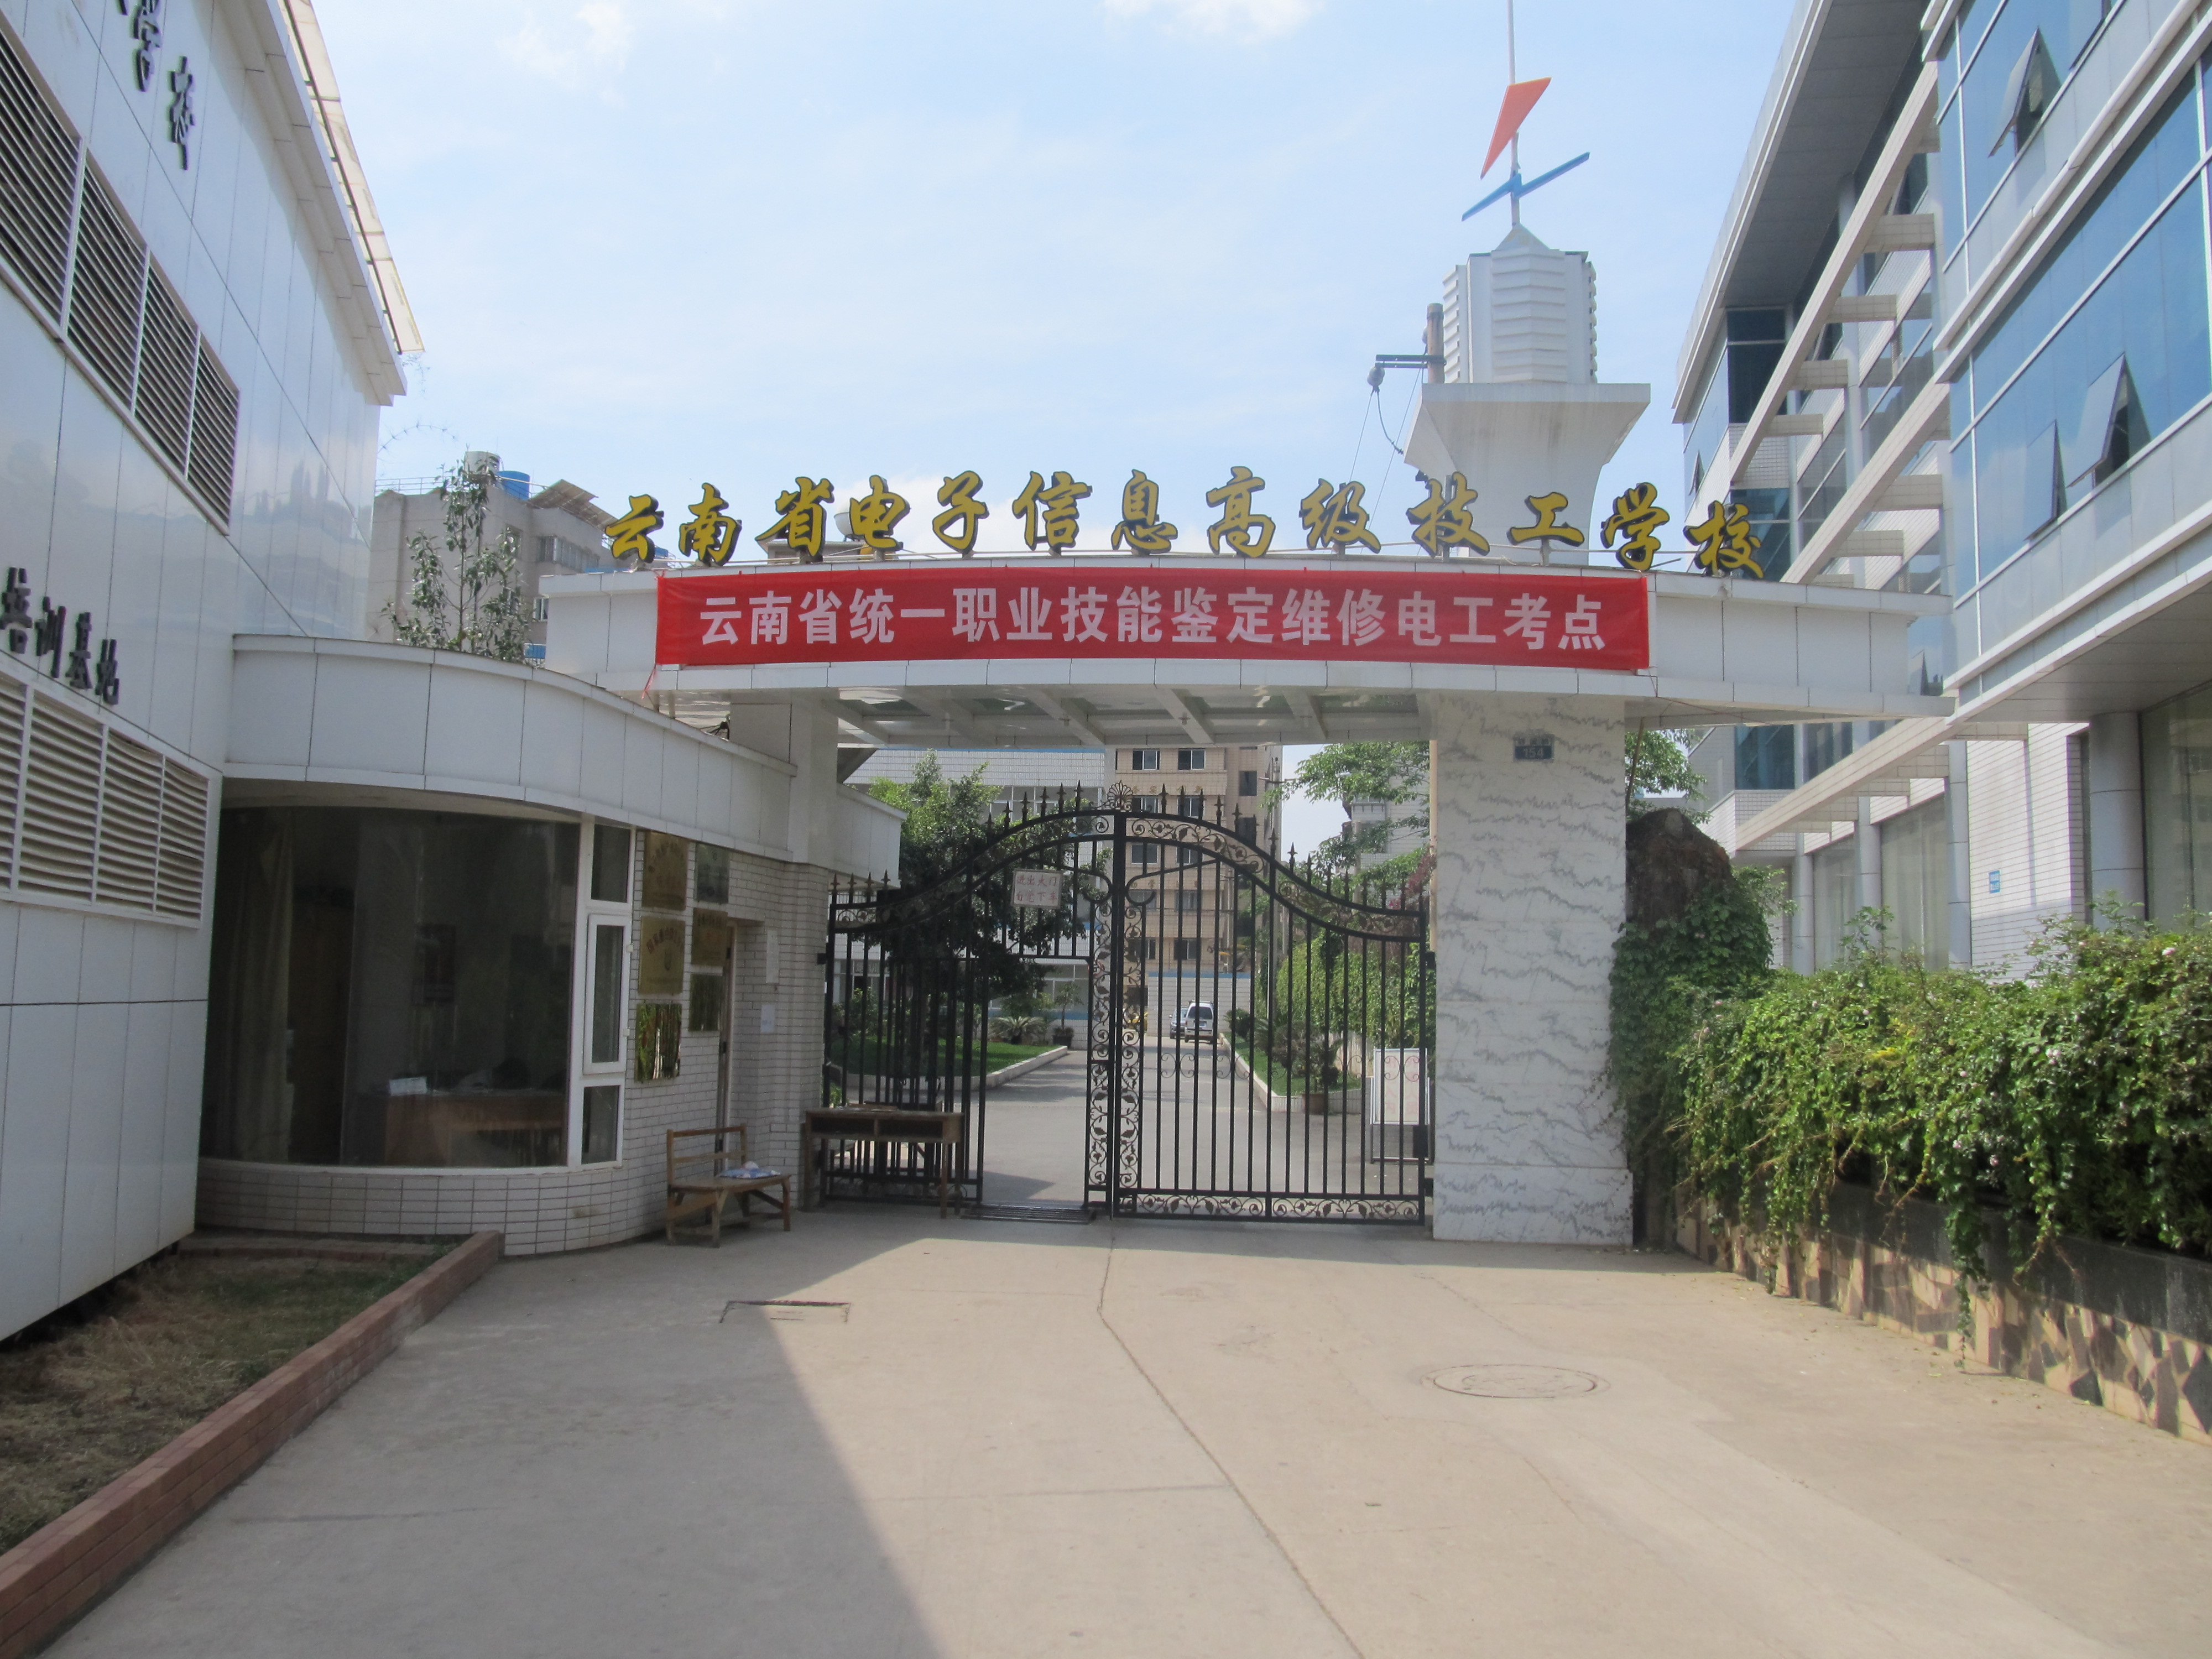 云南省电子信息高级技工学校第103职业技能鉴定所成功举办维修电工